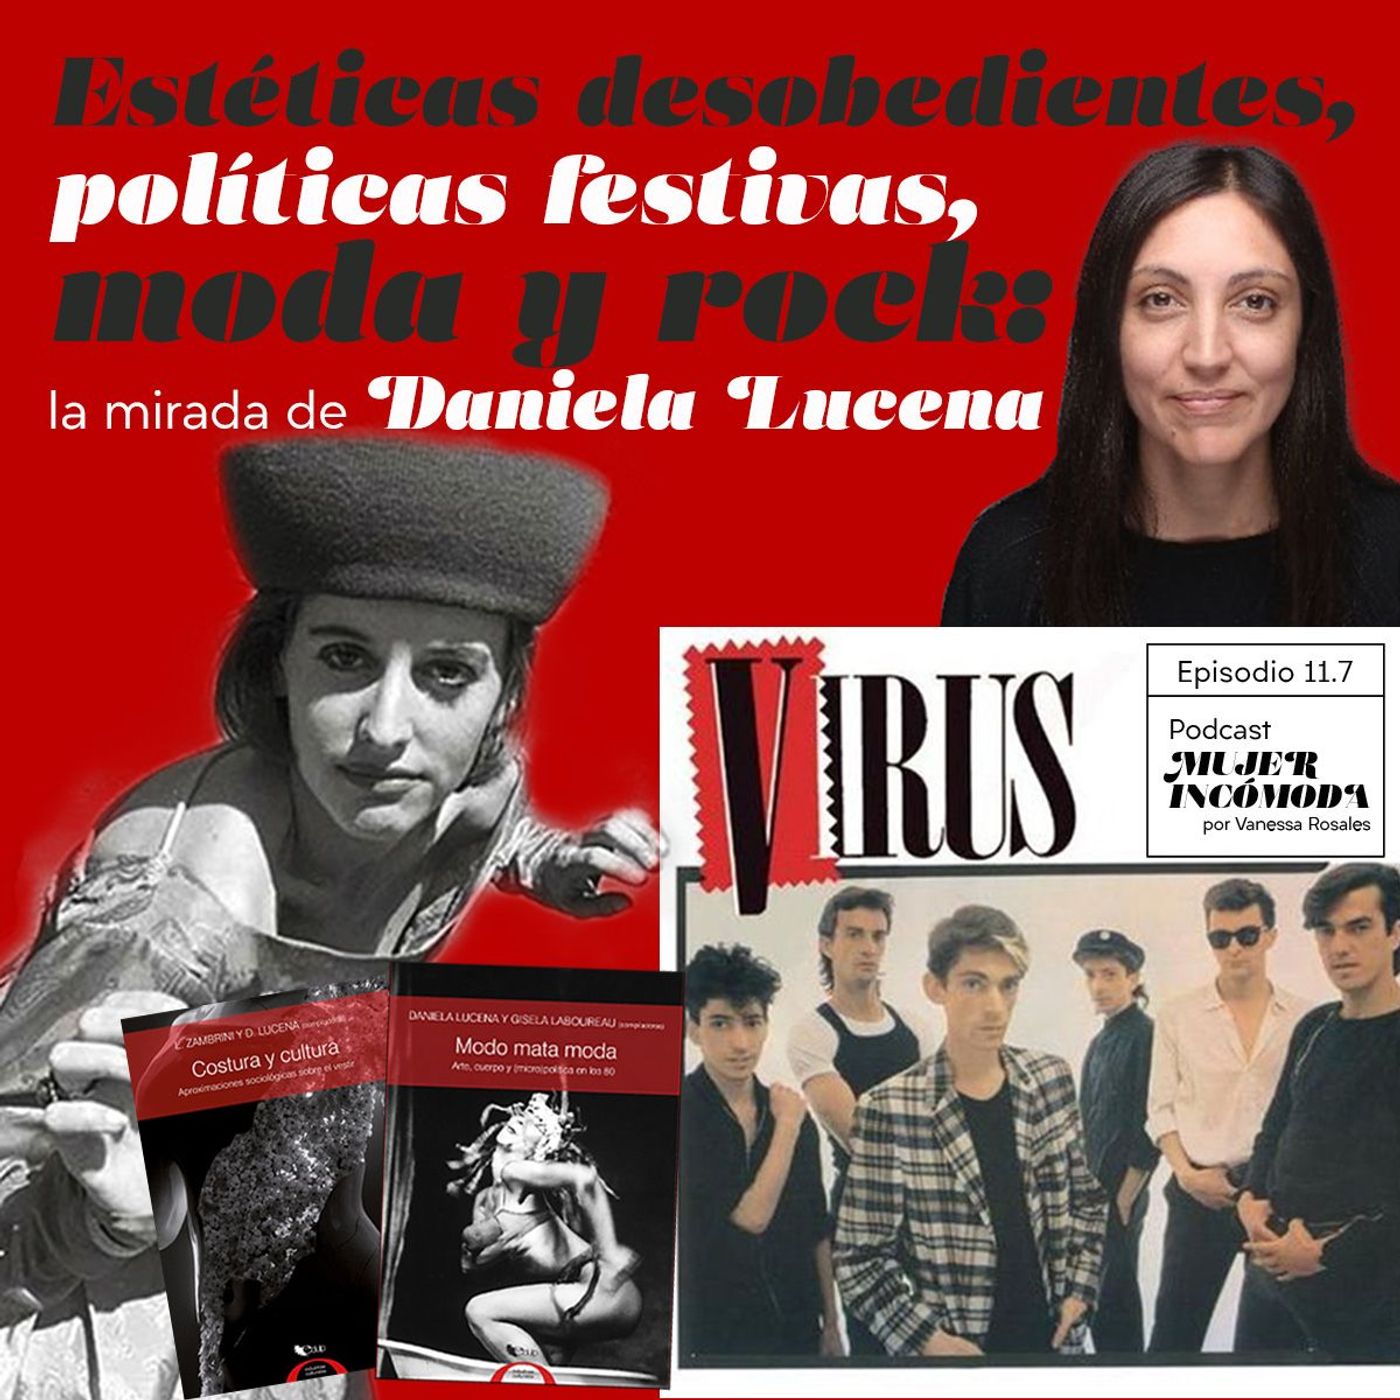 T11 Ep. 7 Estéticas desobedientes, políticas festivas, moda y rock: la mirada de Daniela Lucena